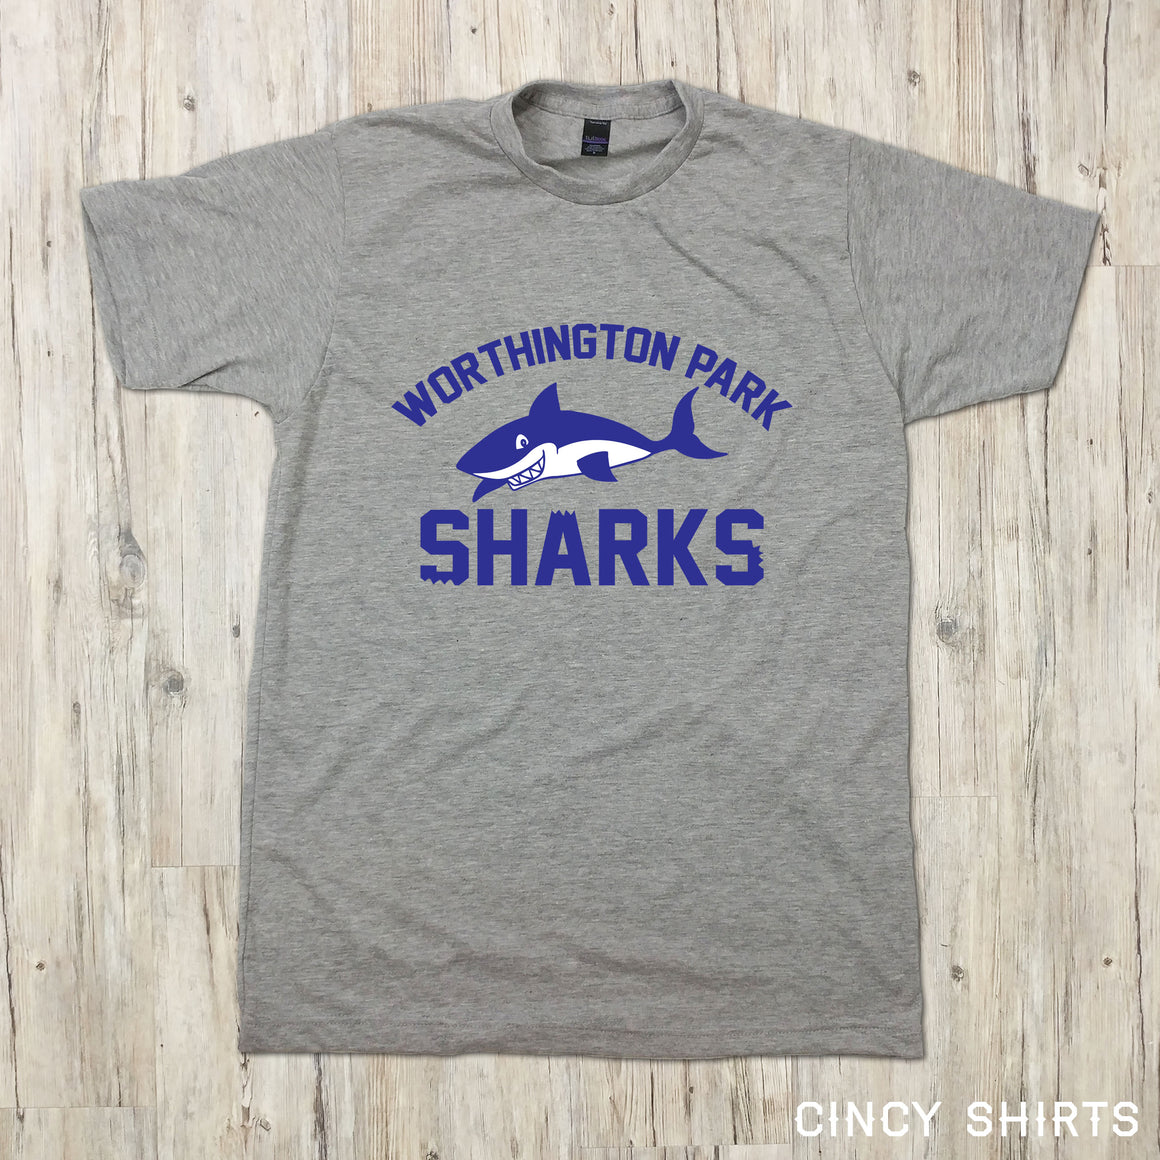 Worthington Park Sharks - Cincy Shirts